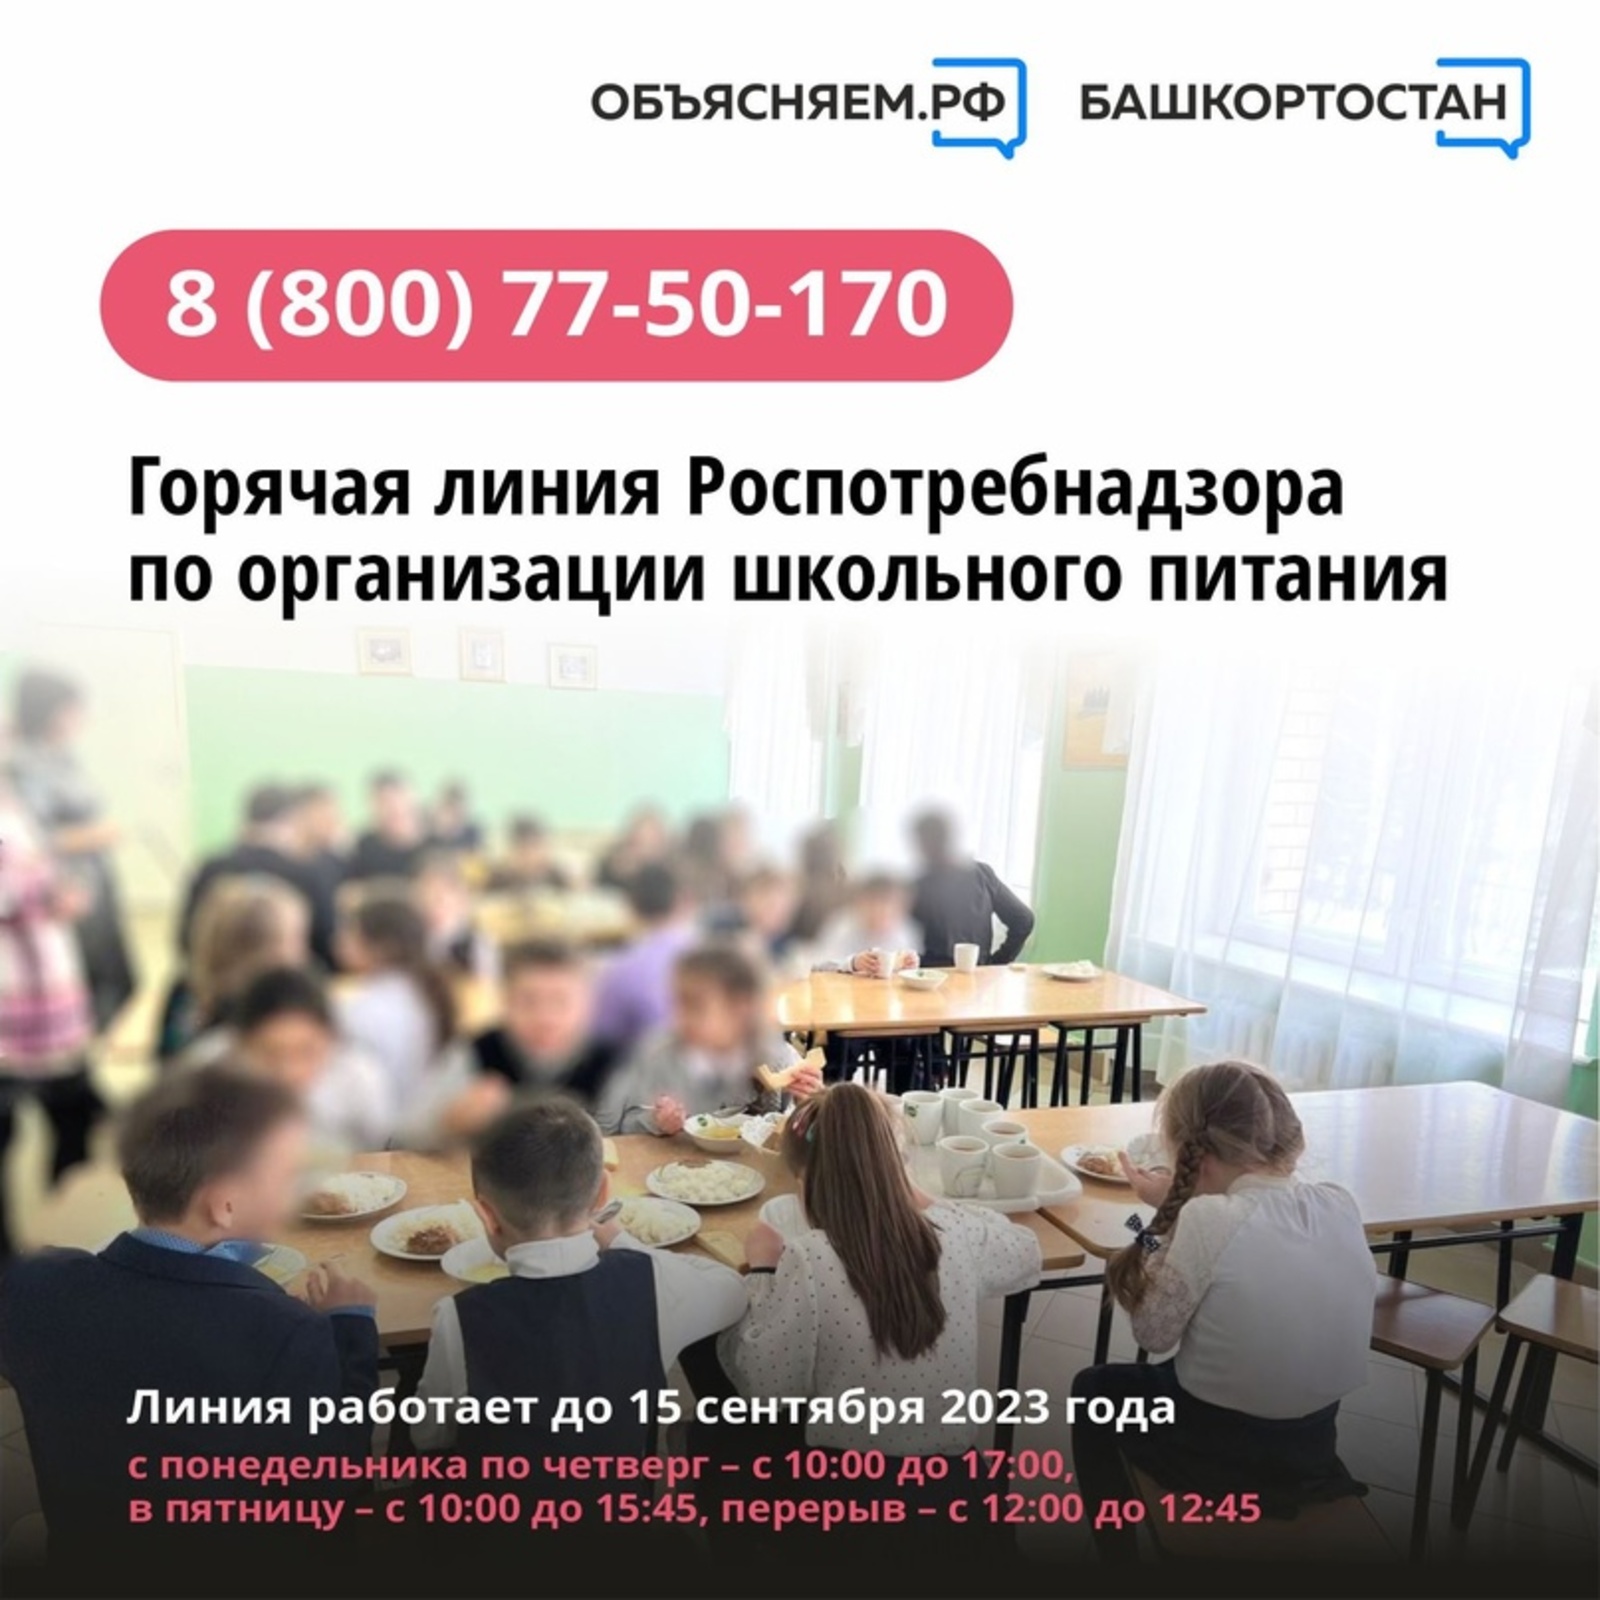 В Башкортостане работает горячая линия по вопросам организации питания в школах